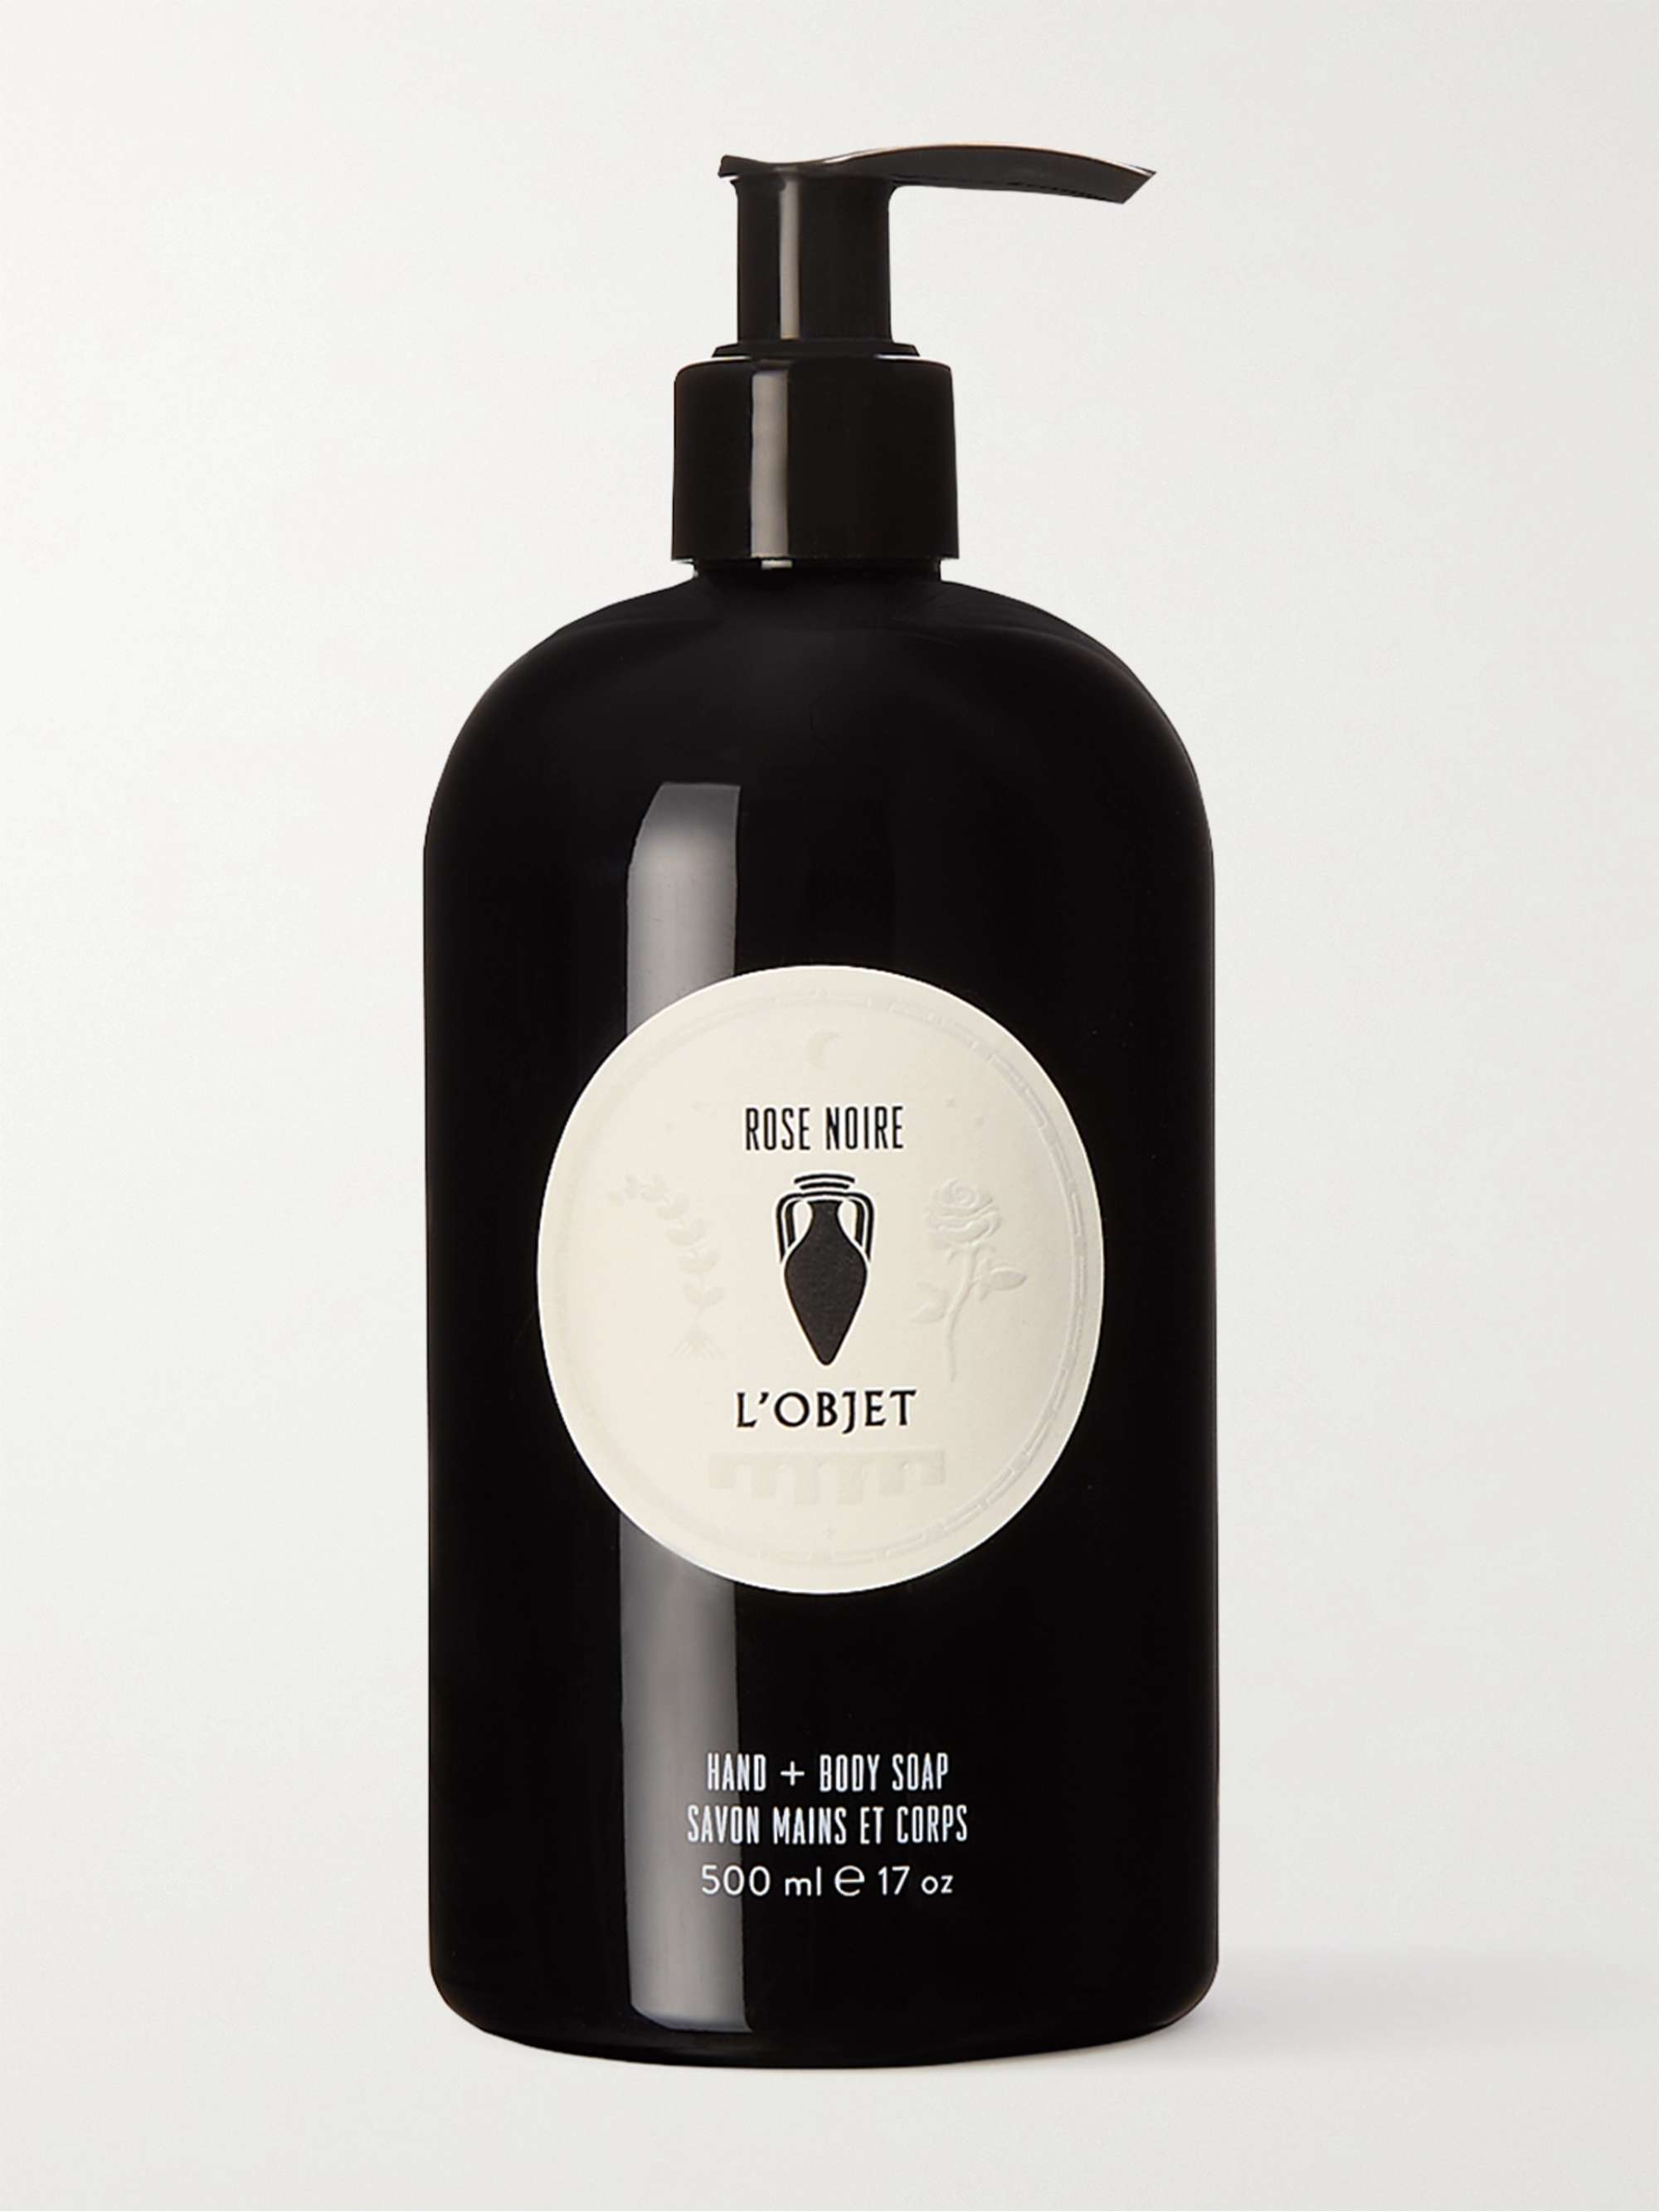 L'OBJET Rose Noire Hand + Body Soap, 500ml